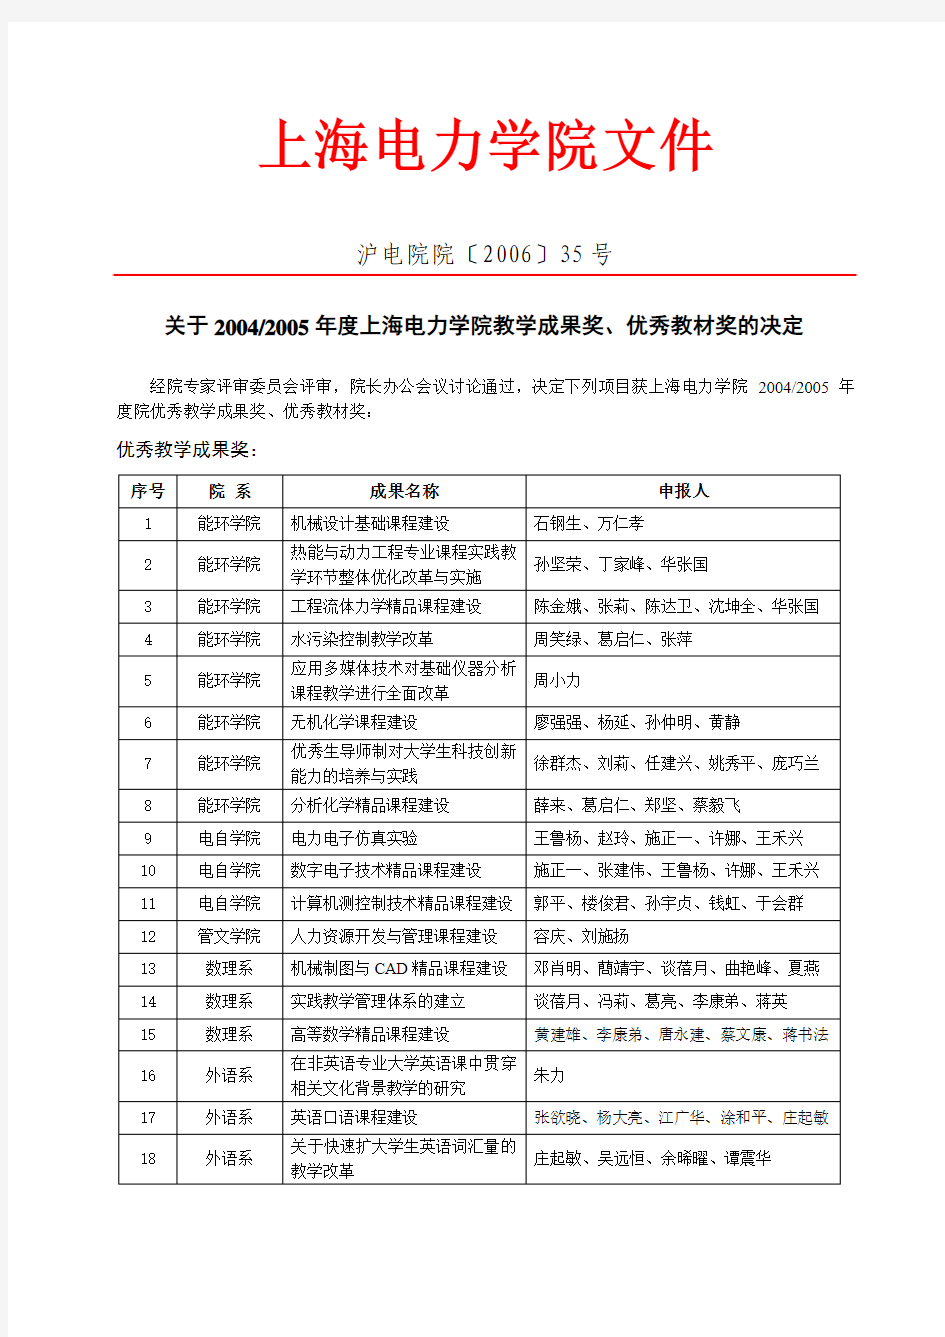 上海电力学院文件